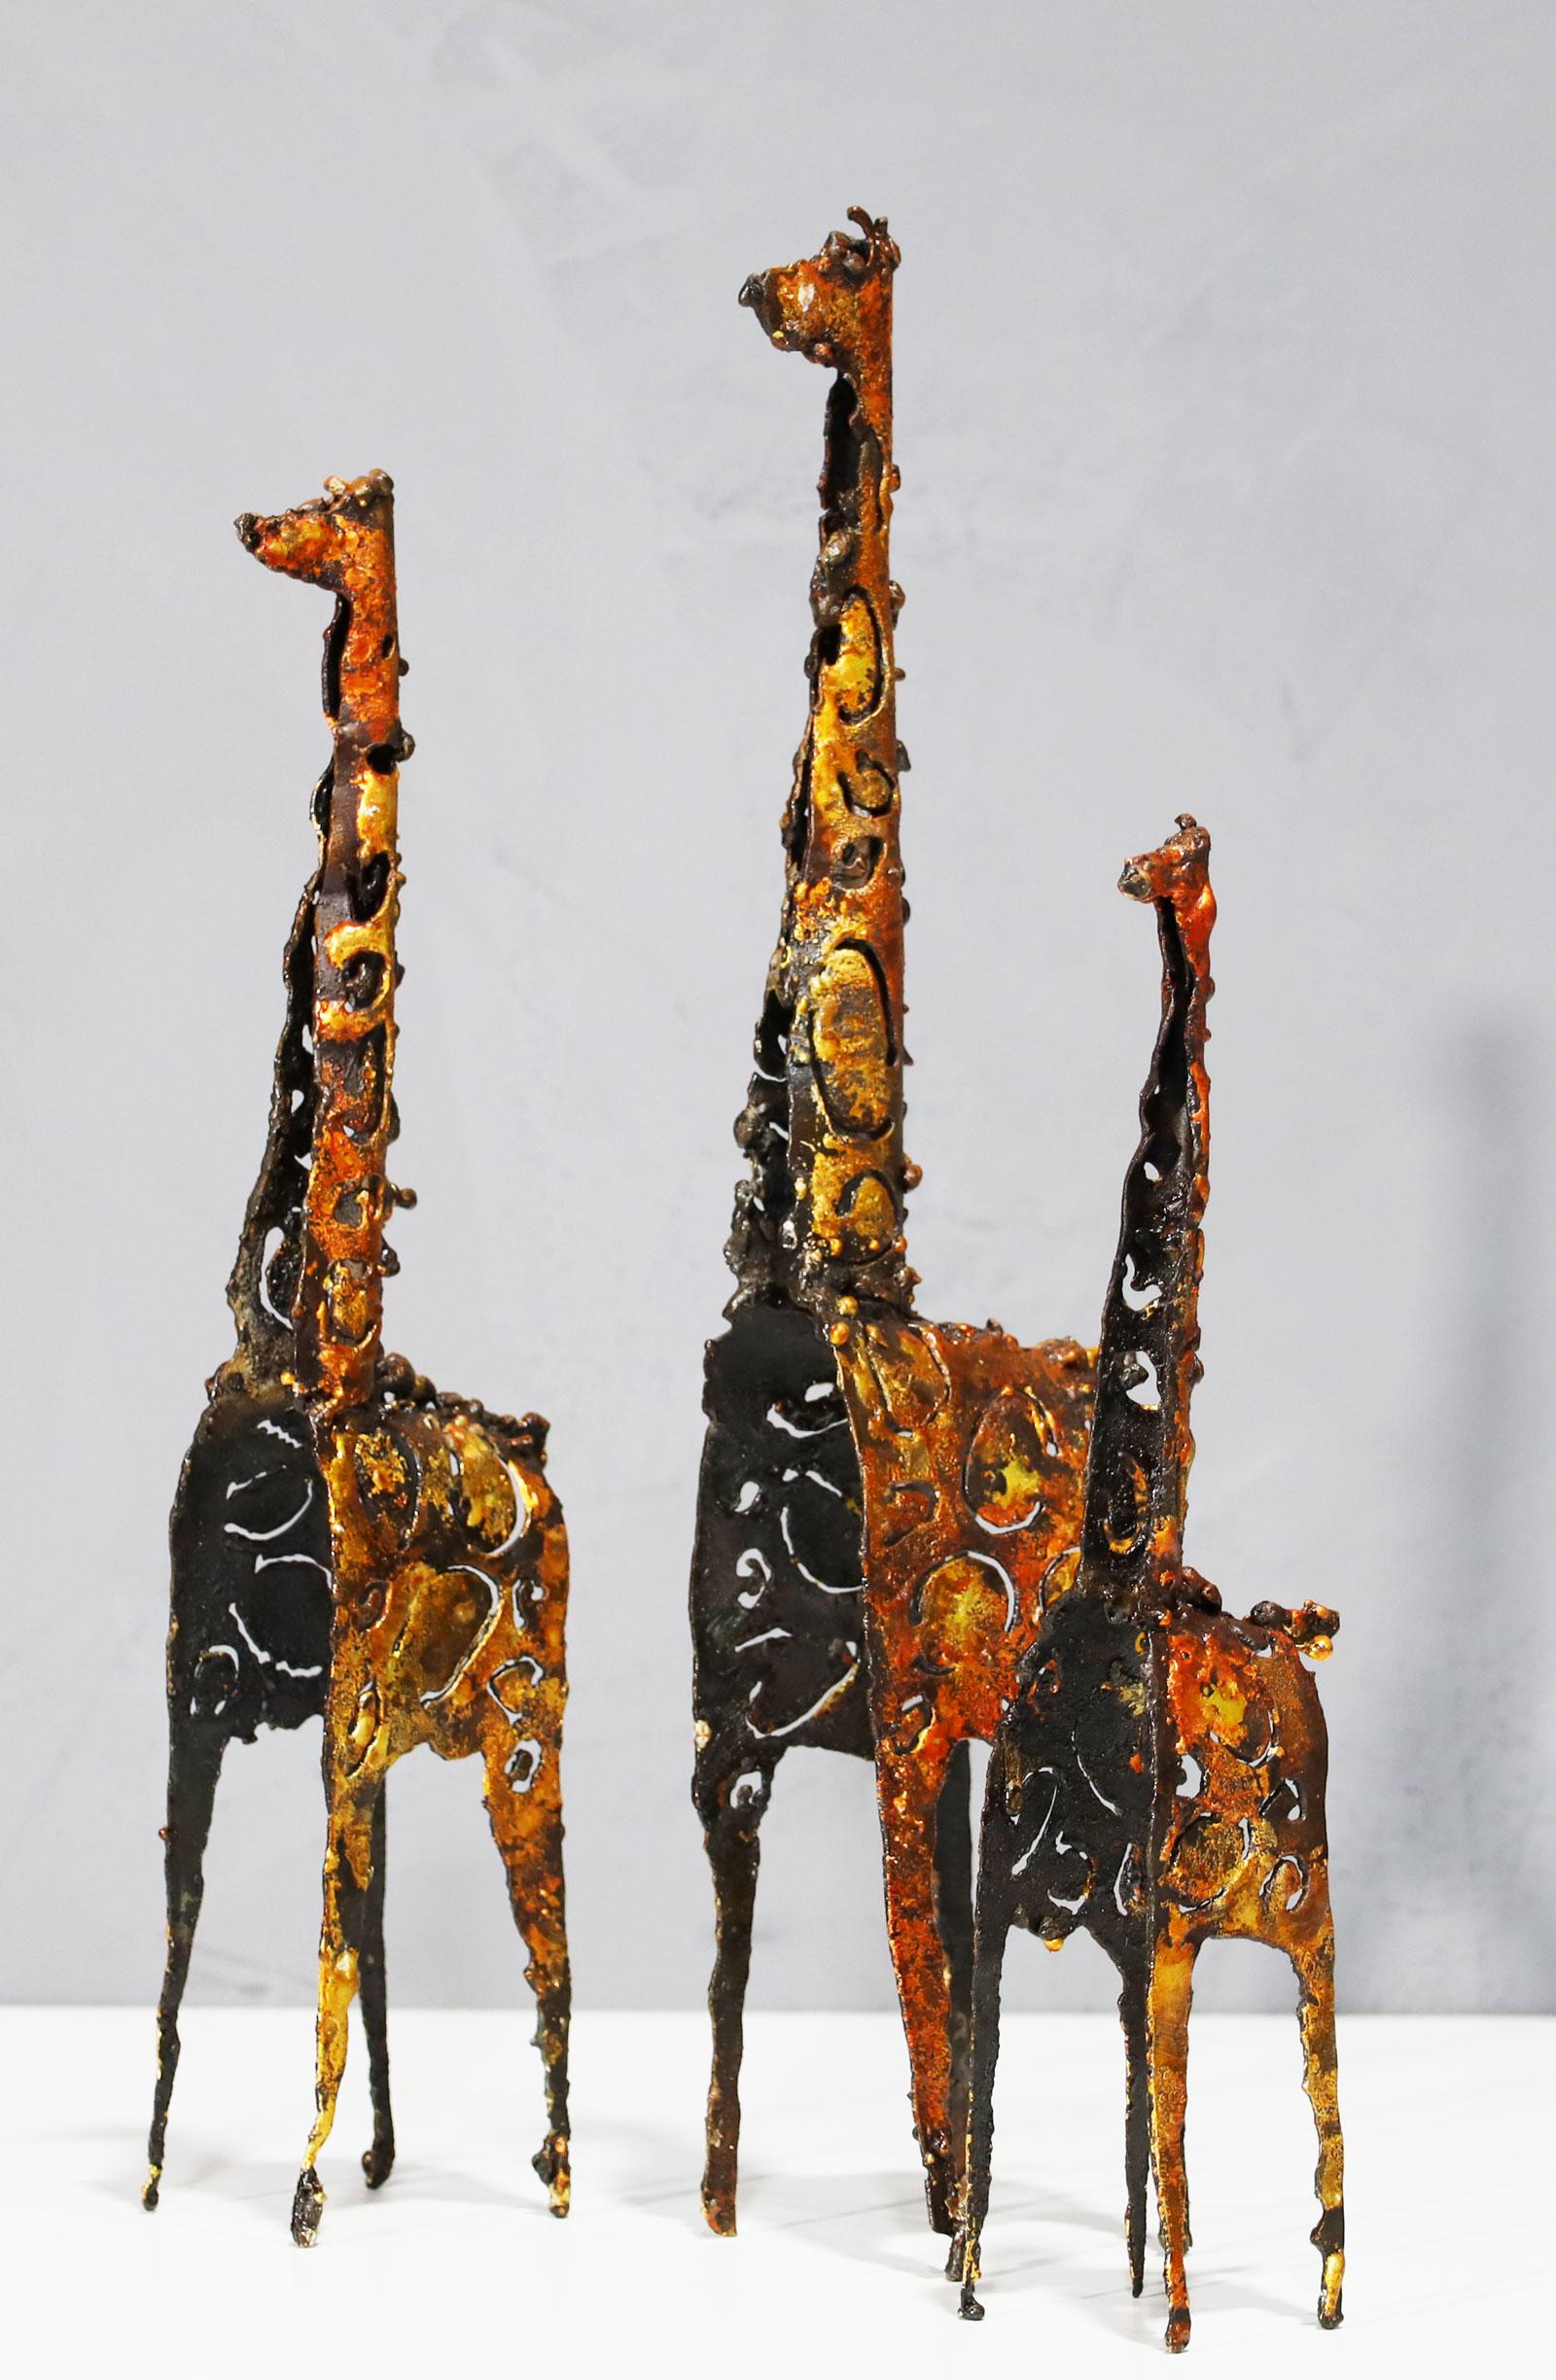 Giraffenskulpturen im brutalistischen Stil von James Bearden. Signiert JB auf der Unterseite einer Giraffe. Die Messungen sind wie folgt:

Maße: 17,75 